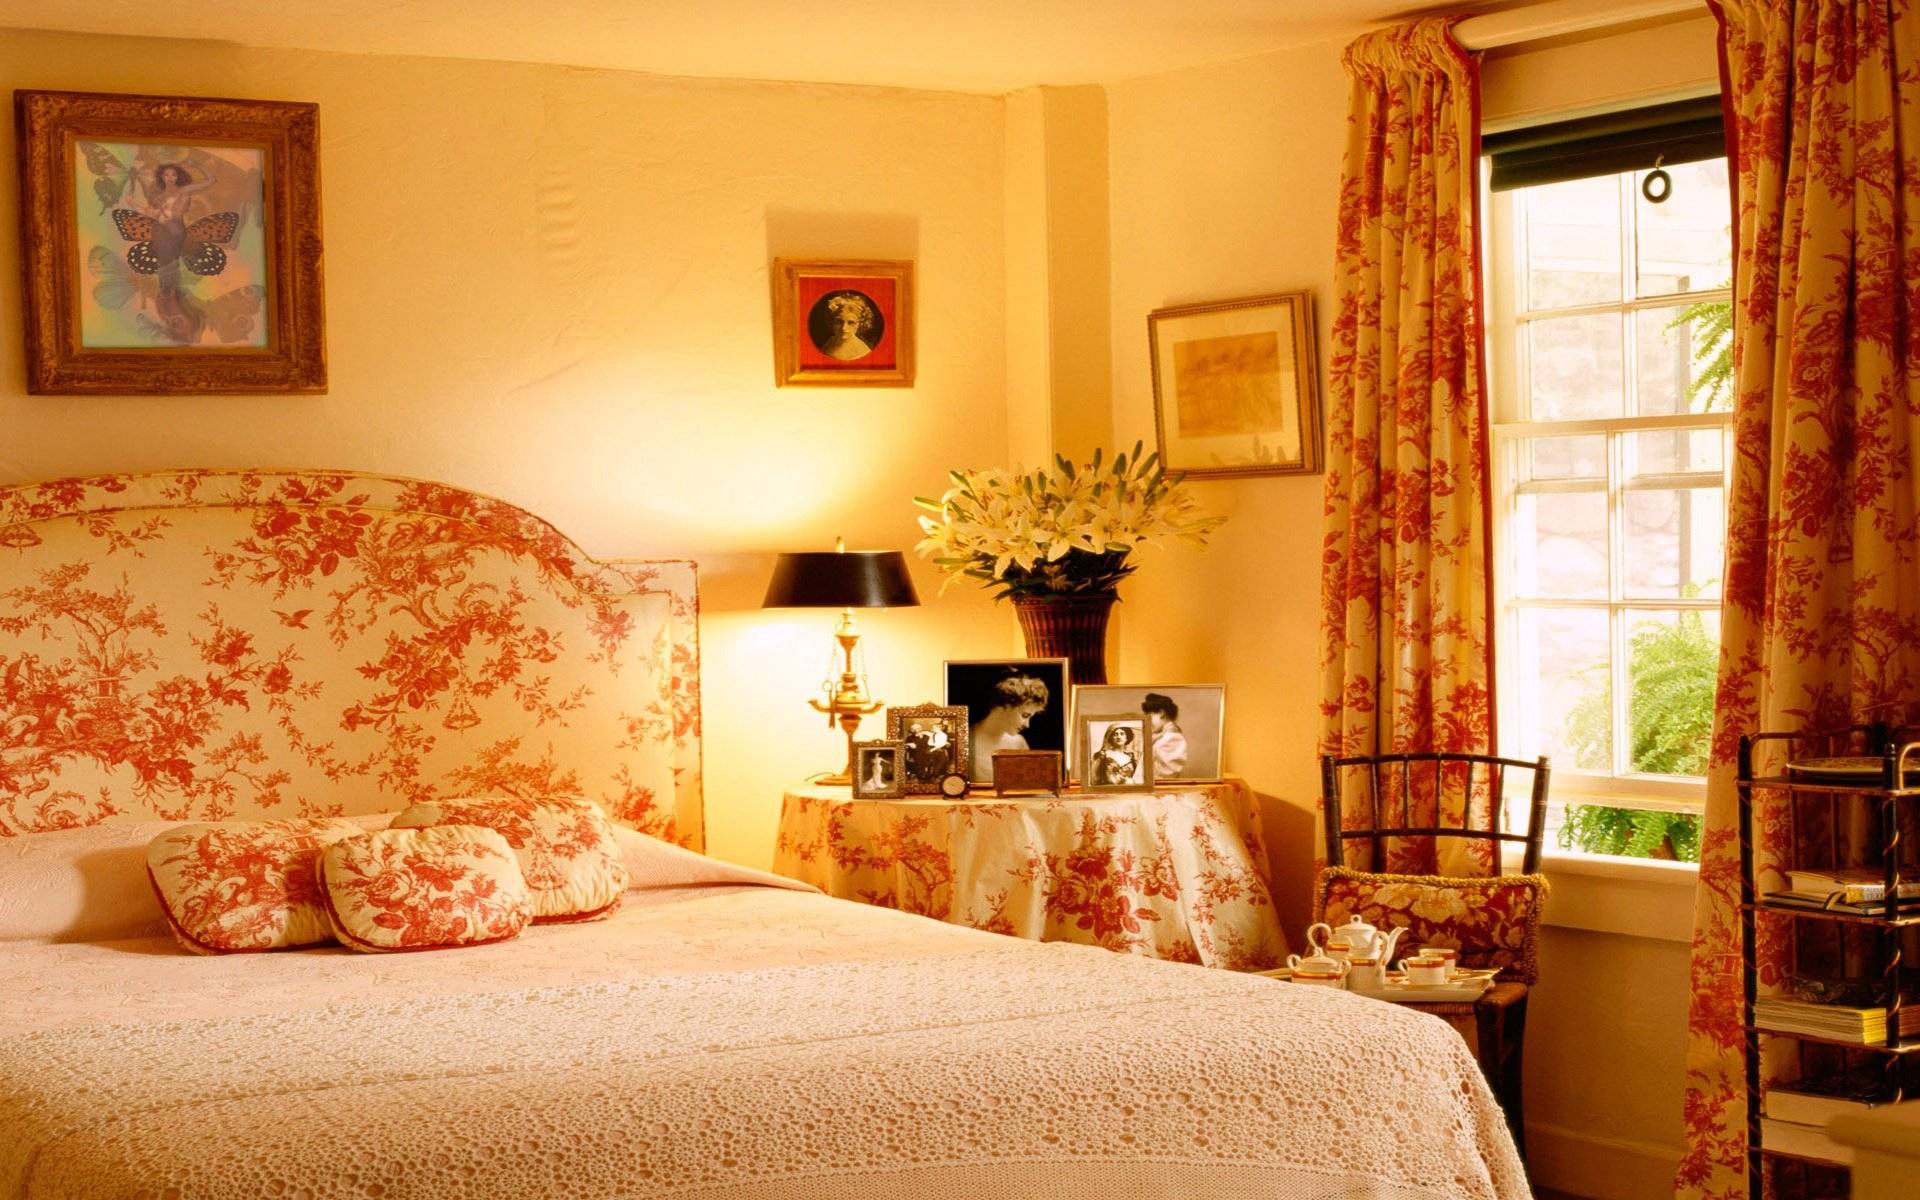 Спальня в английском стиле: 83 фото с идеями дизайна интерьера